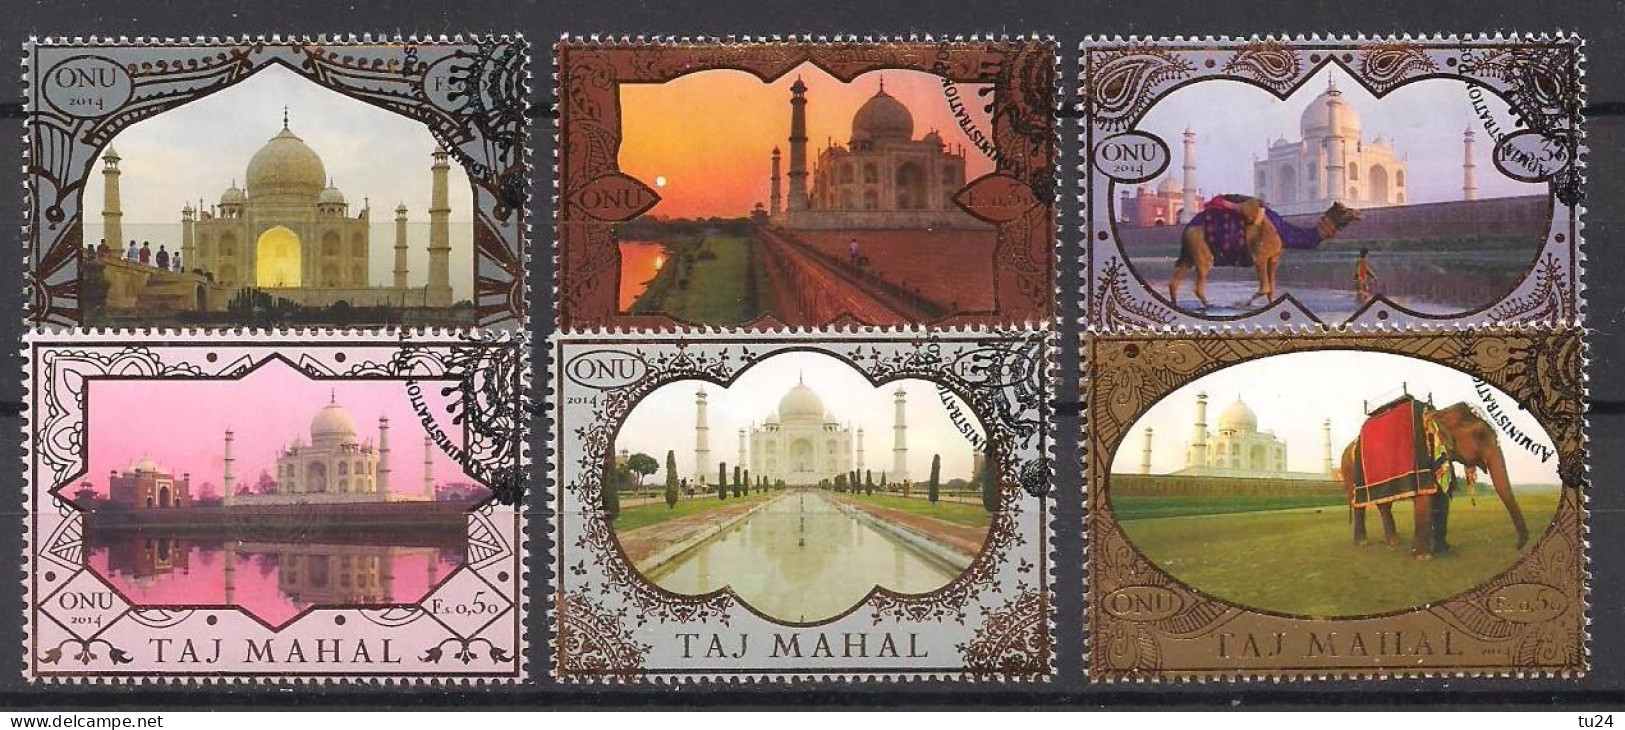 UNO  Genf  (2014)  Mi.Nr.  864 - 869  Gest. / Used  (9hf05) Taj Mahal - Used Stamps